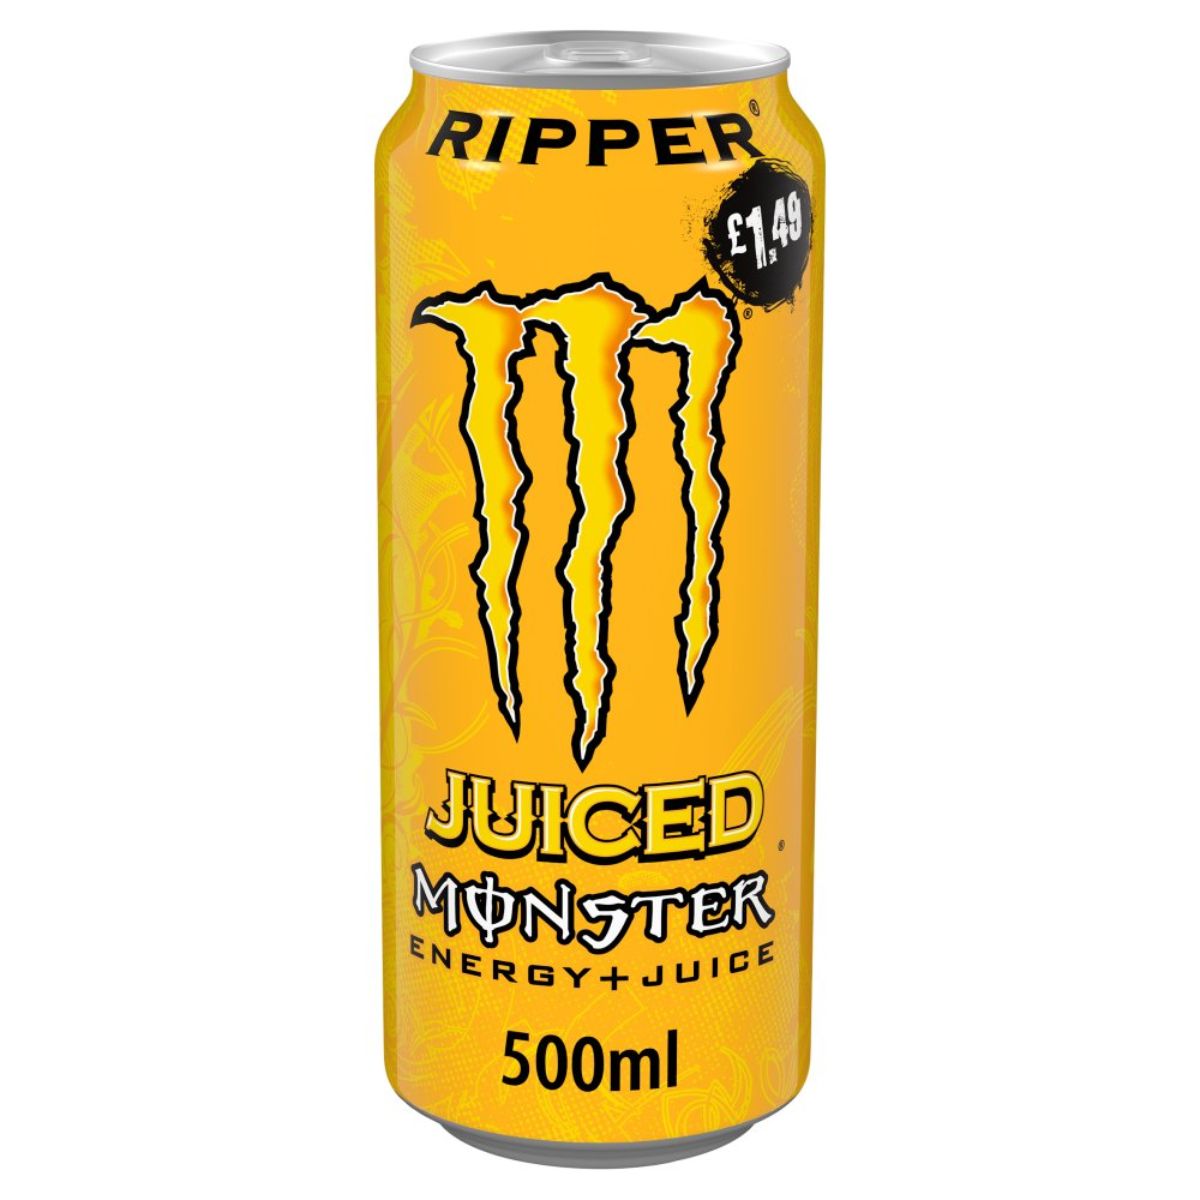 Monster - Ripper Energy Drink - 500ml.